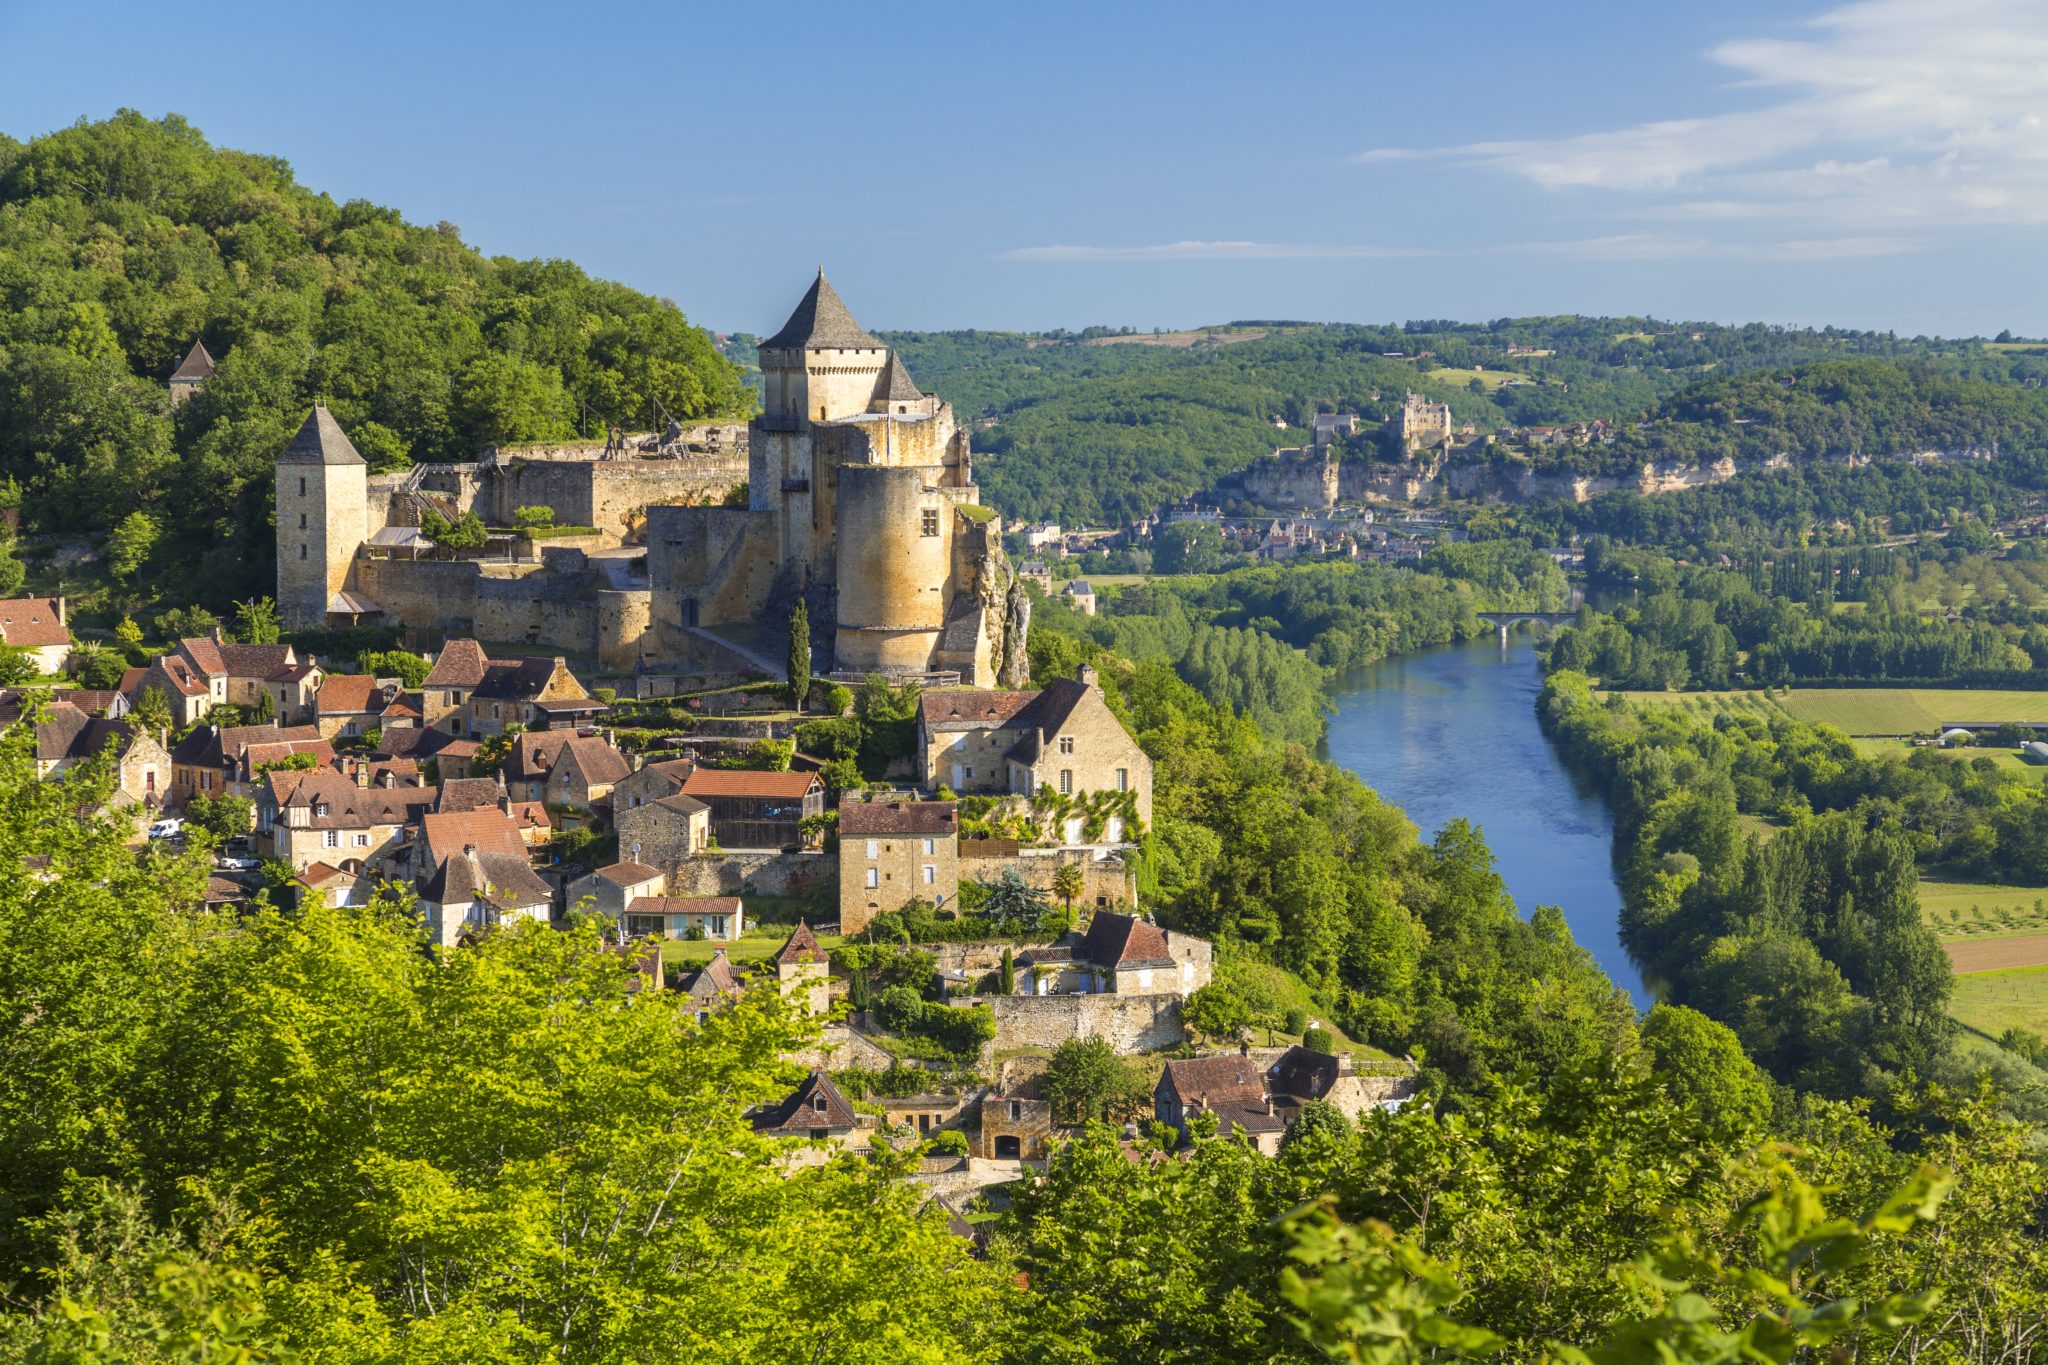 Het kasteel van Castelnaud gelegen op een heuvel in de Dordogne. Beneden zie je de rivier en in de verte zie je een ander dorpje met kasteel liggen.